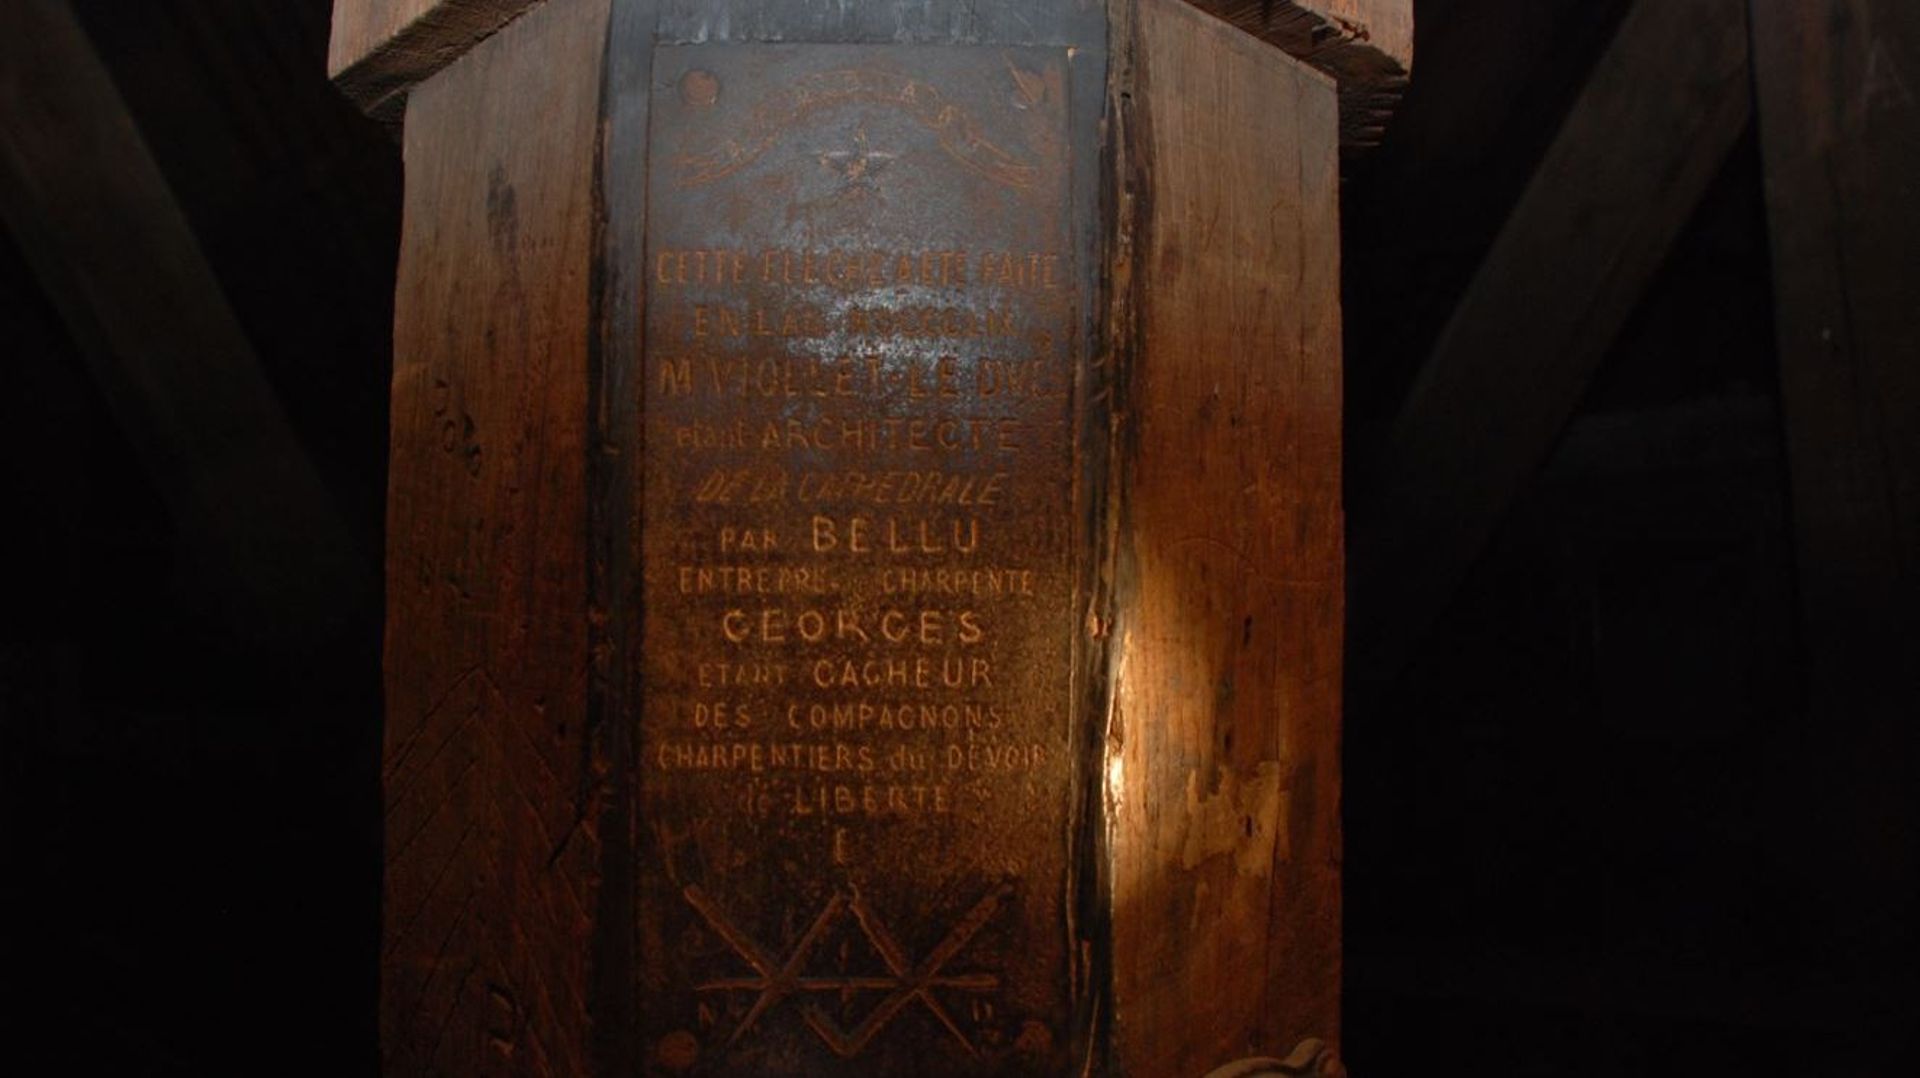 "Cette flèche a été faite en l'an MCCCLIX (1859) M. VIOLLET-LE DUC etant ARCHITECTE" témoignait ce texte gravé dans une charpente de Notre-Dame de Paris